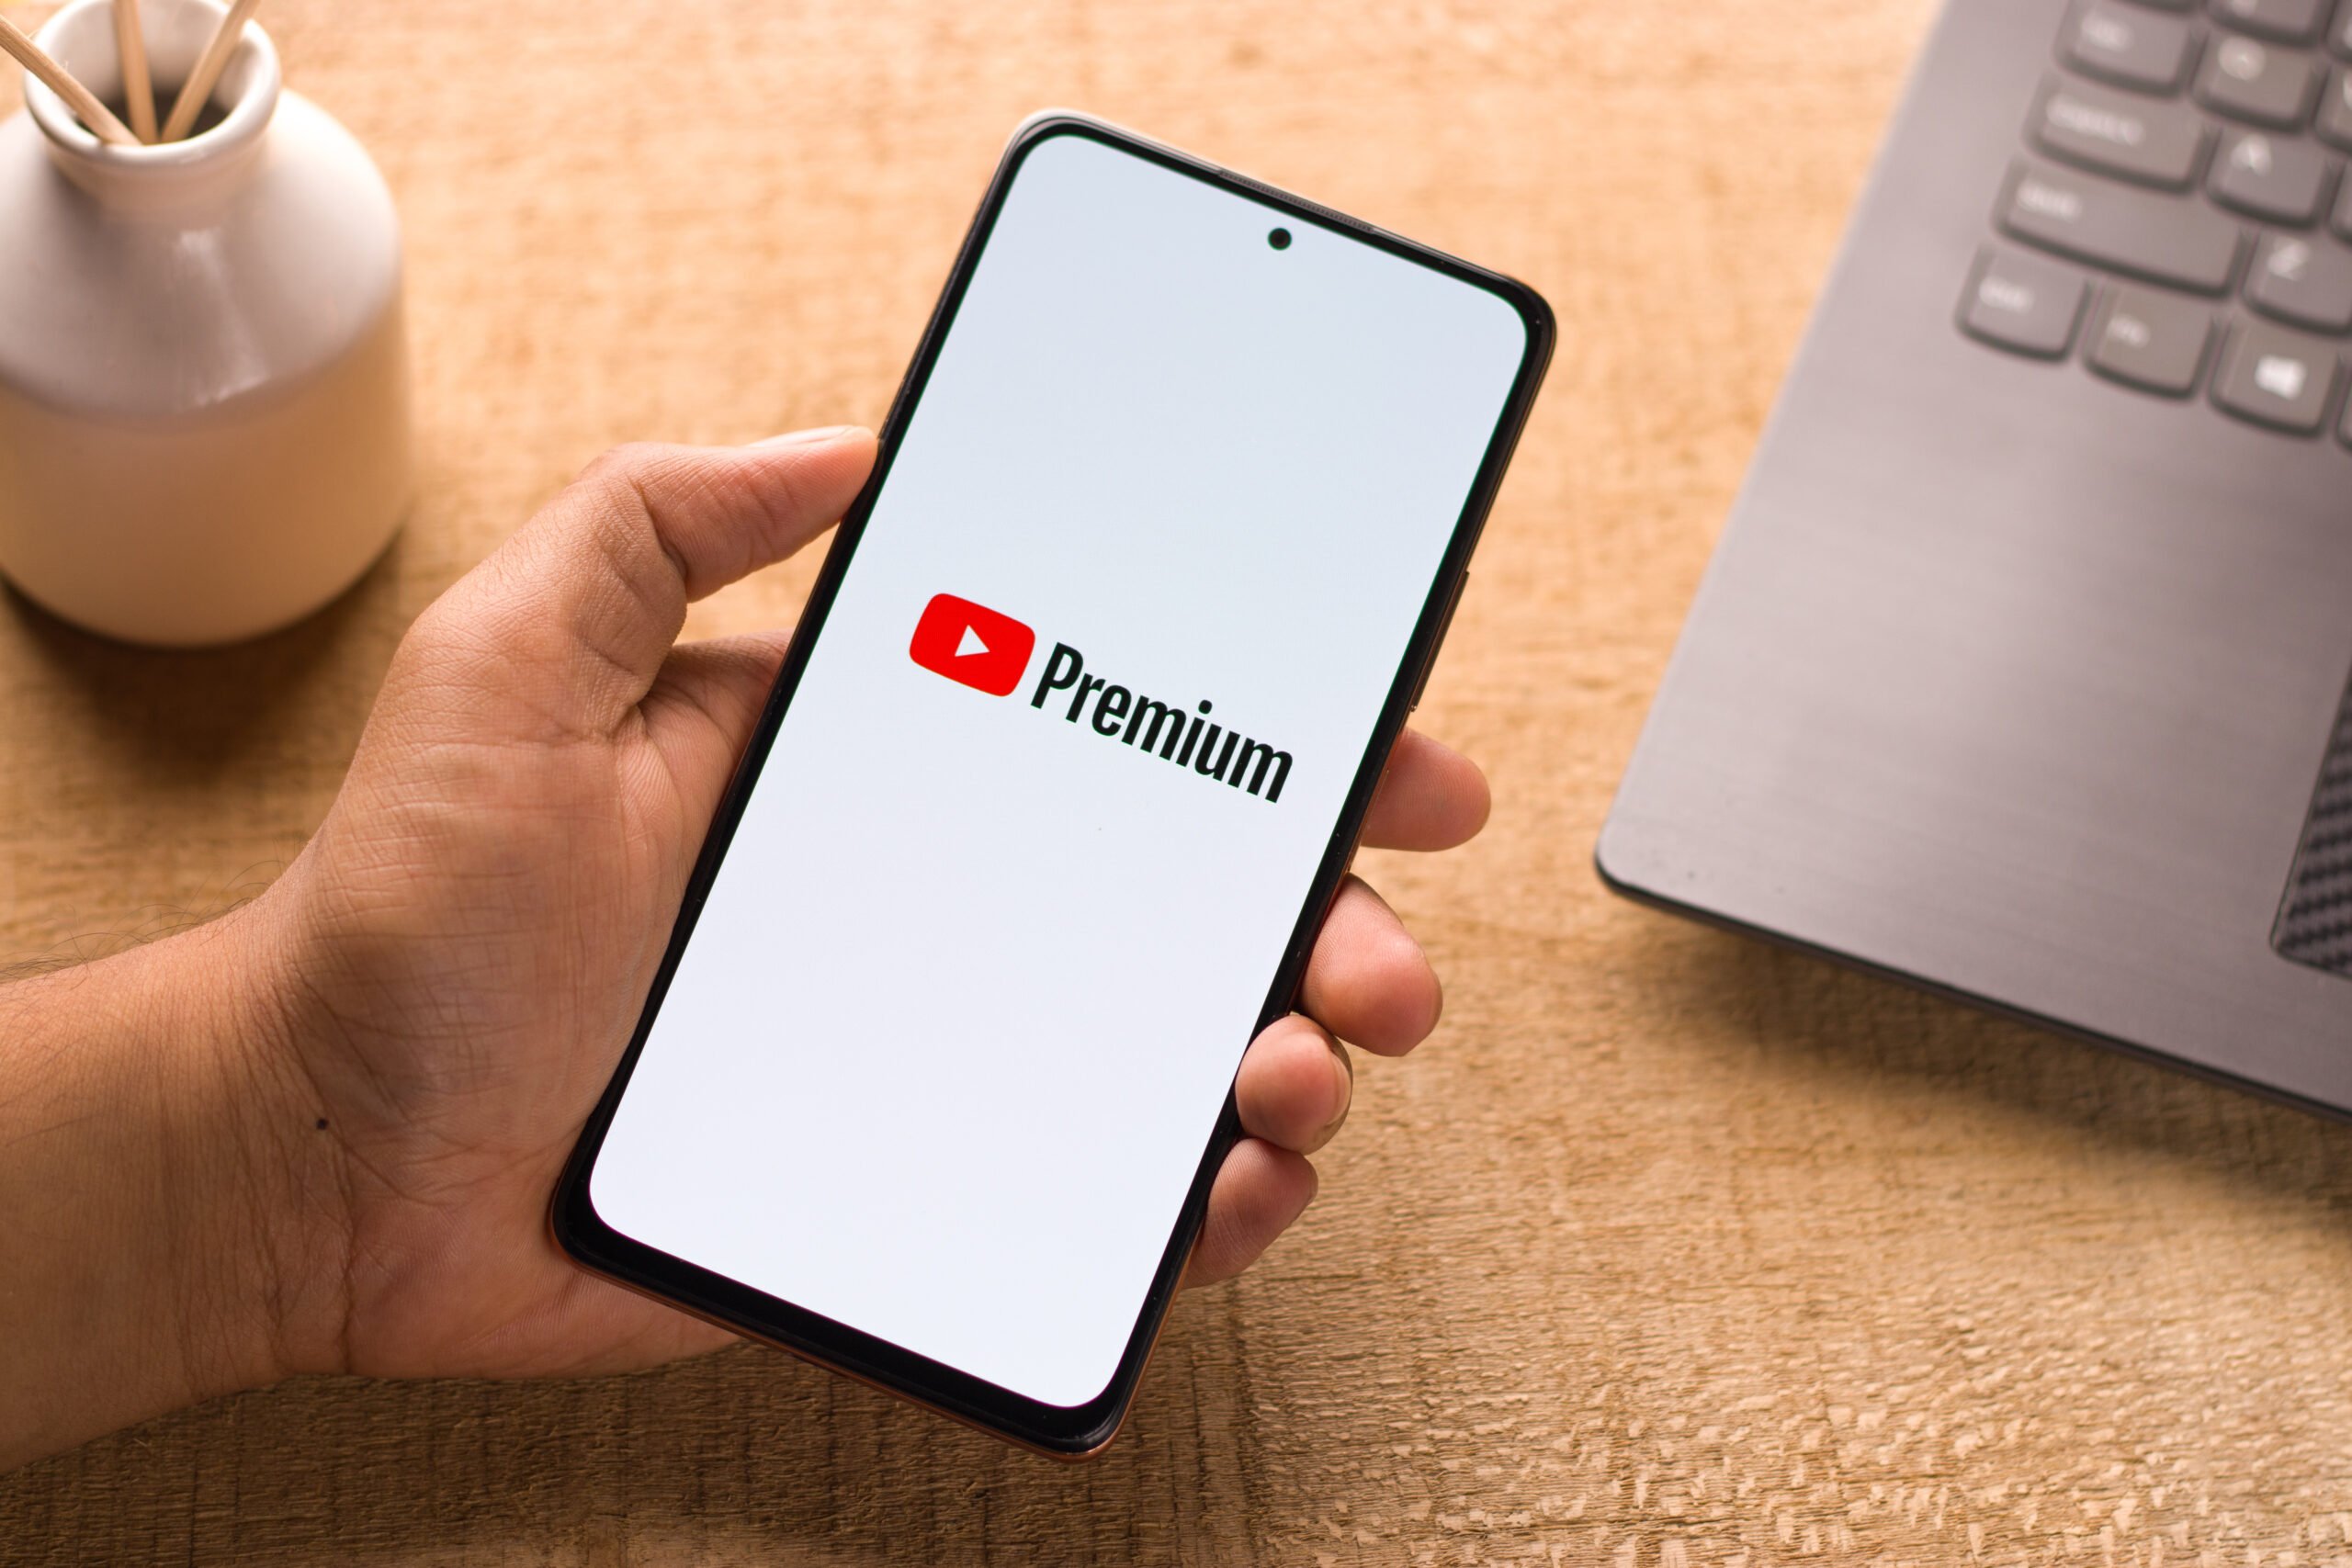 Smartfon z logo YouTube Premium na ekranie trzymany nad biurkiem i laptopem